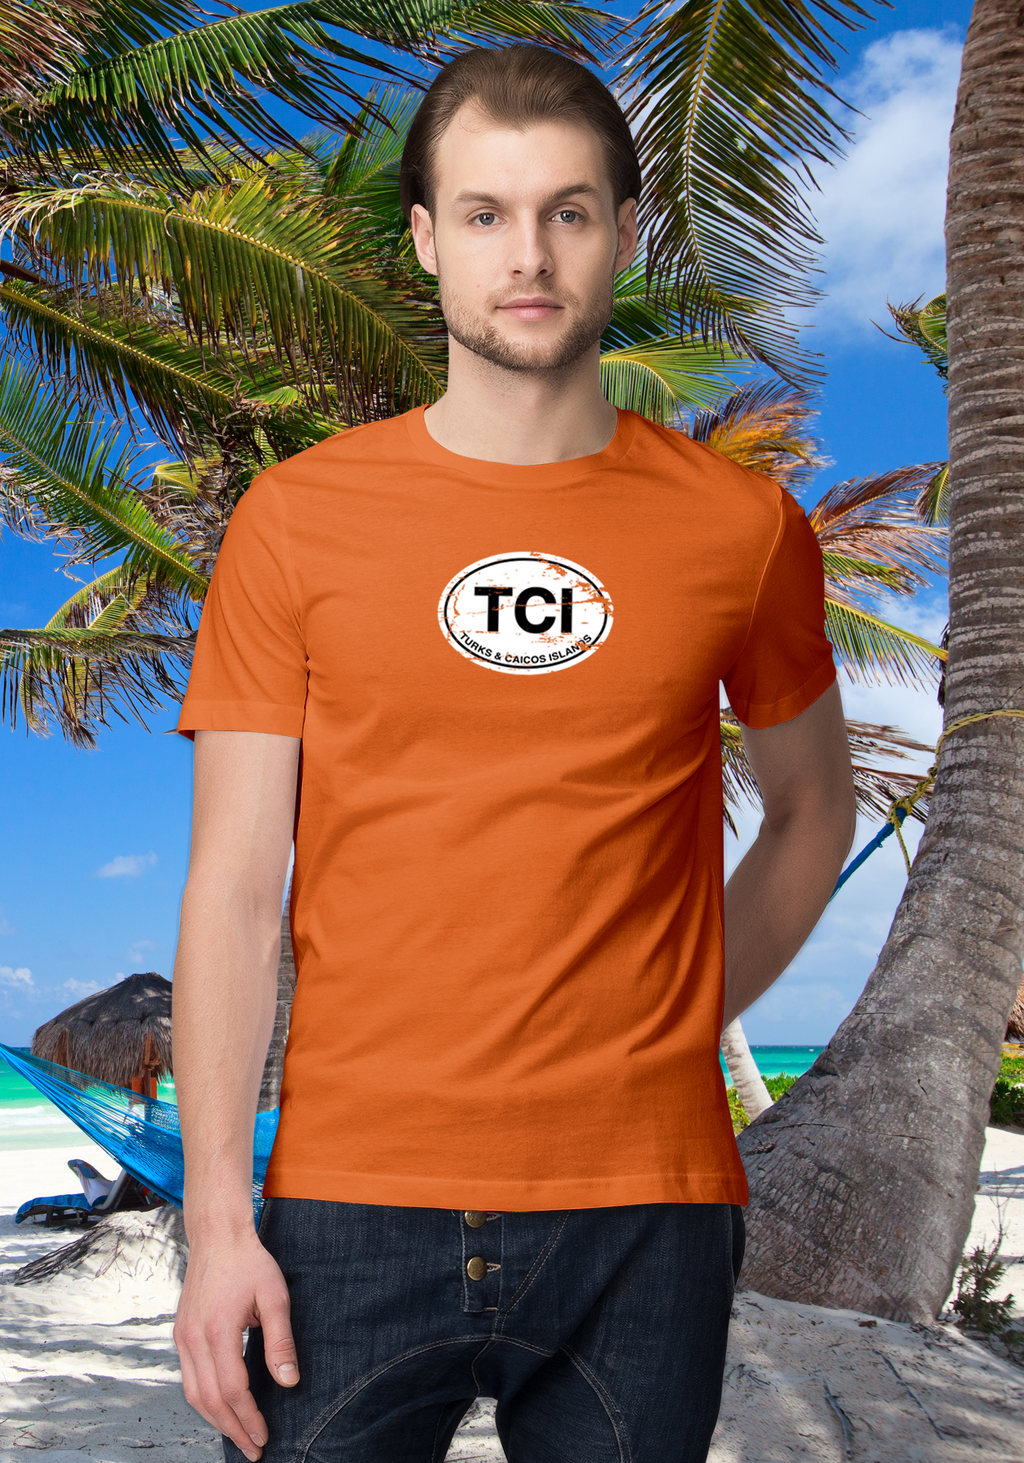 Turks & Caicos Men's Classic T-Shirt Souvenirs - My Destination Location